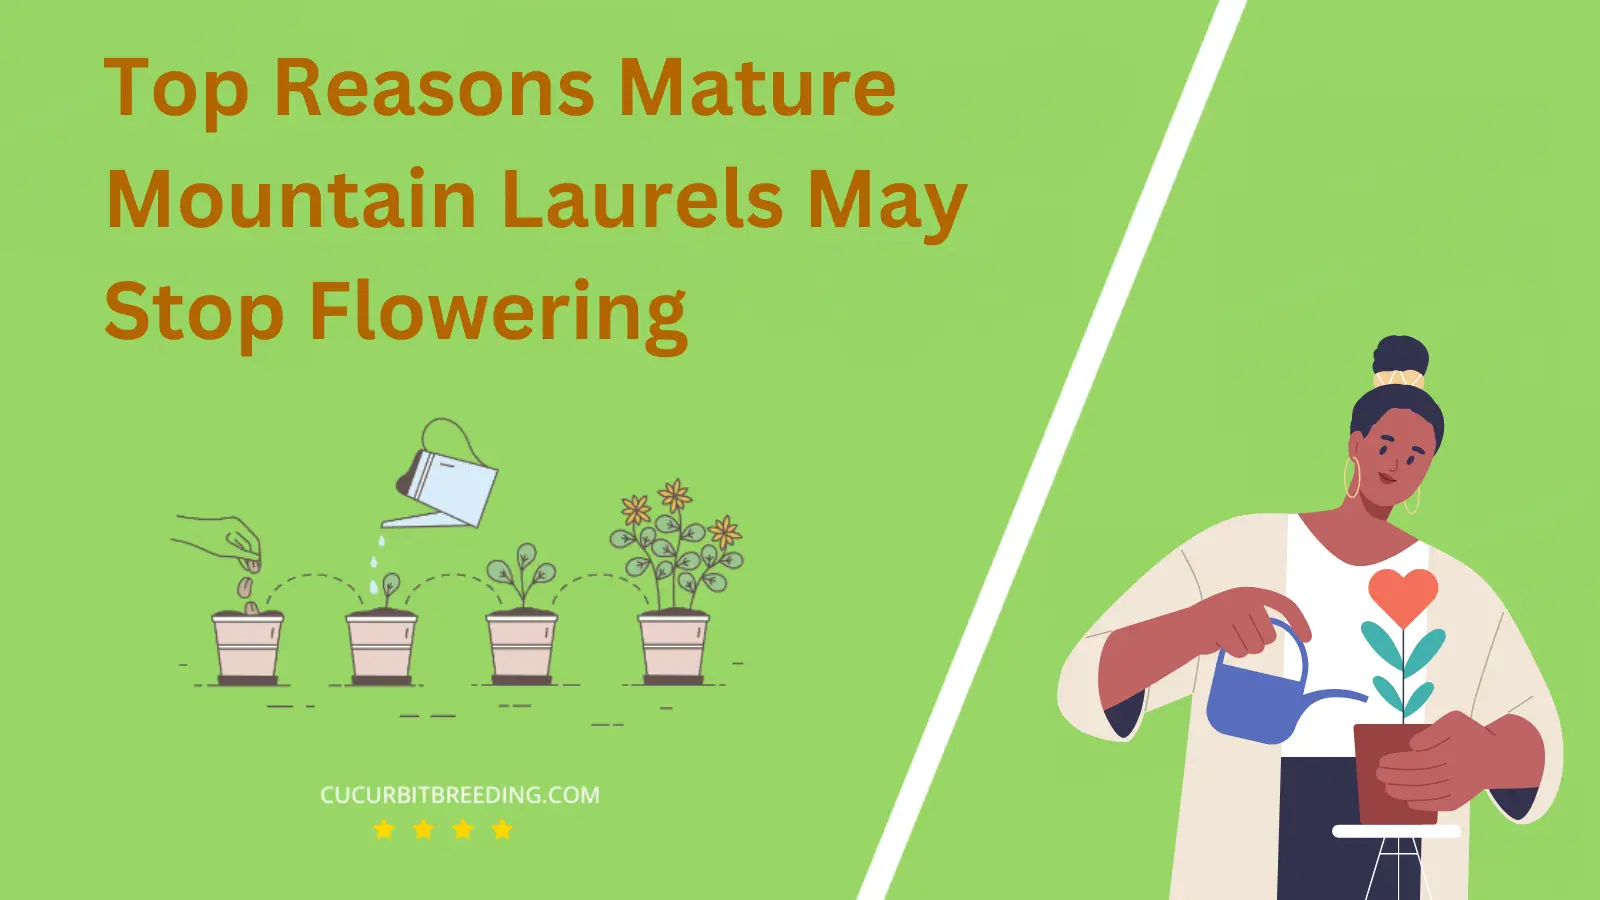 Top Reasons Mature Mountain Laurels May Stop Flowering